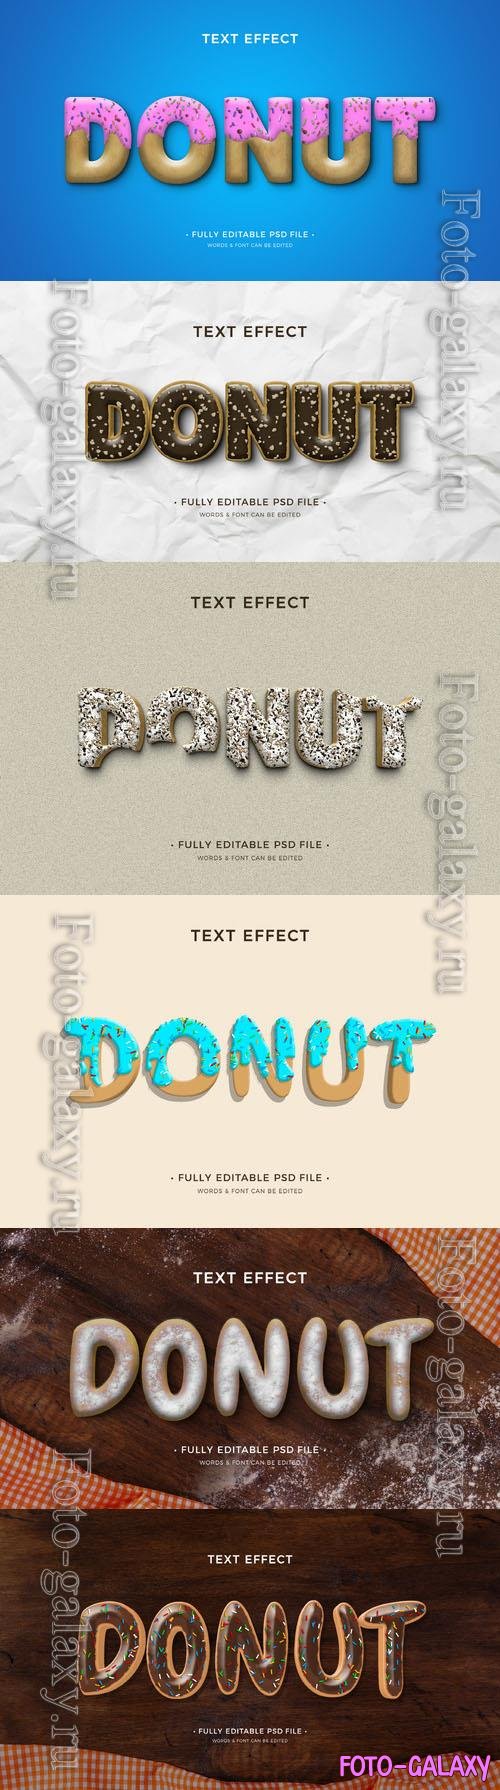 PSD donut text effect